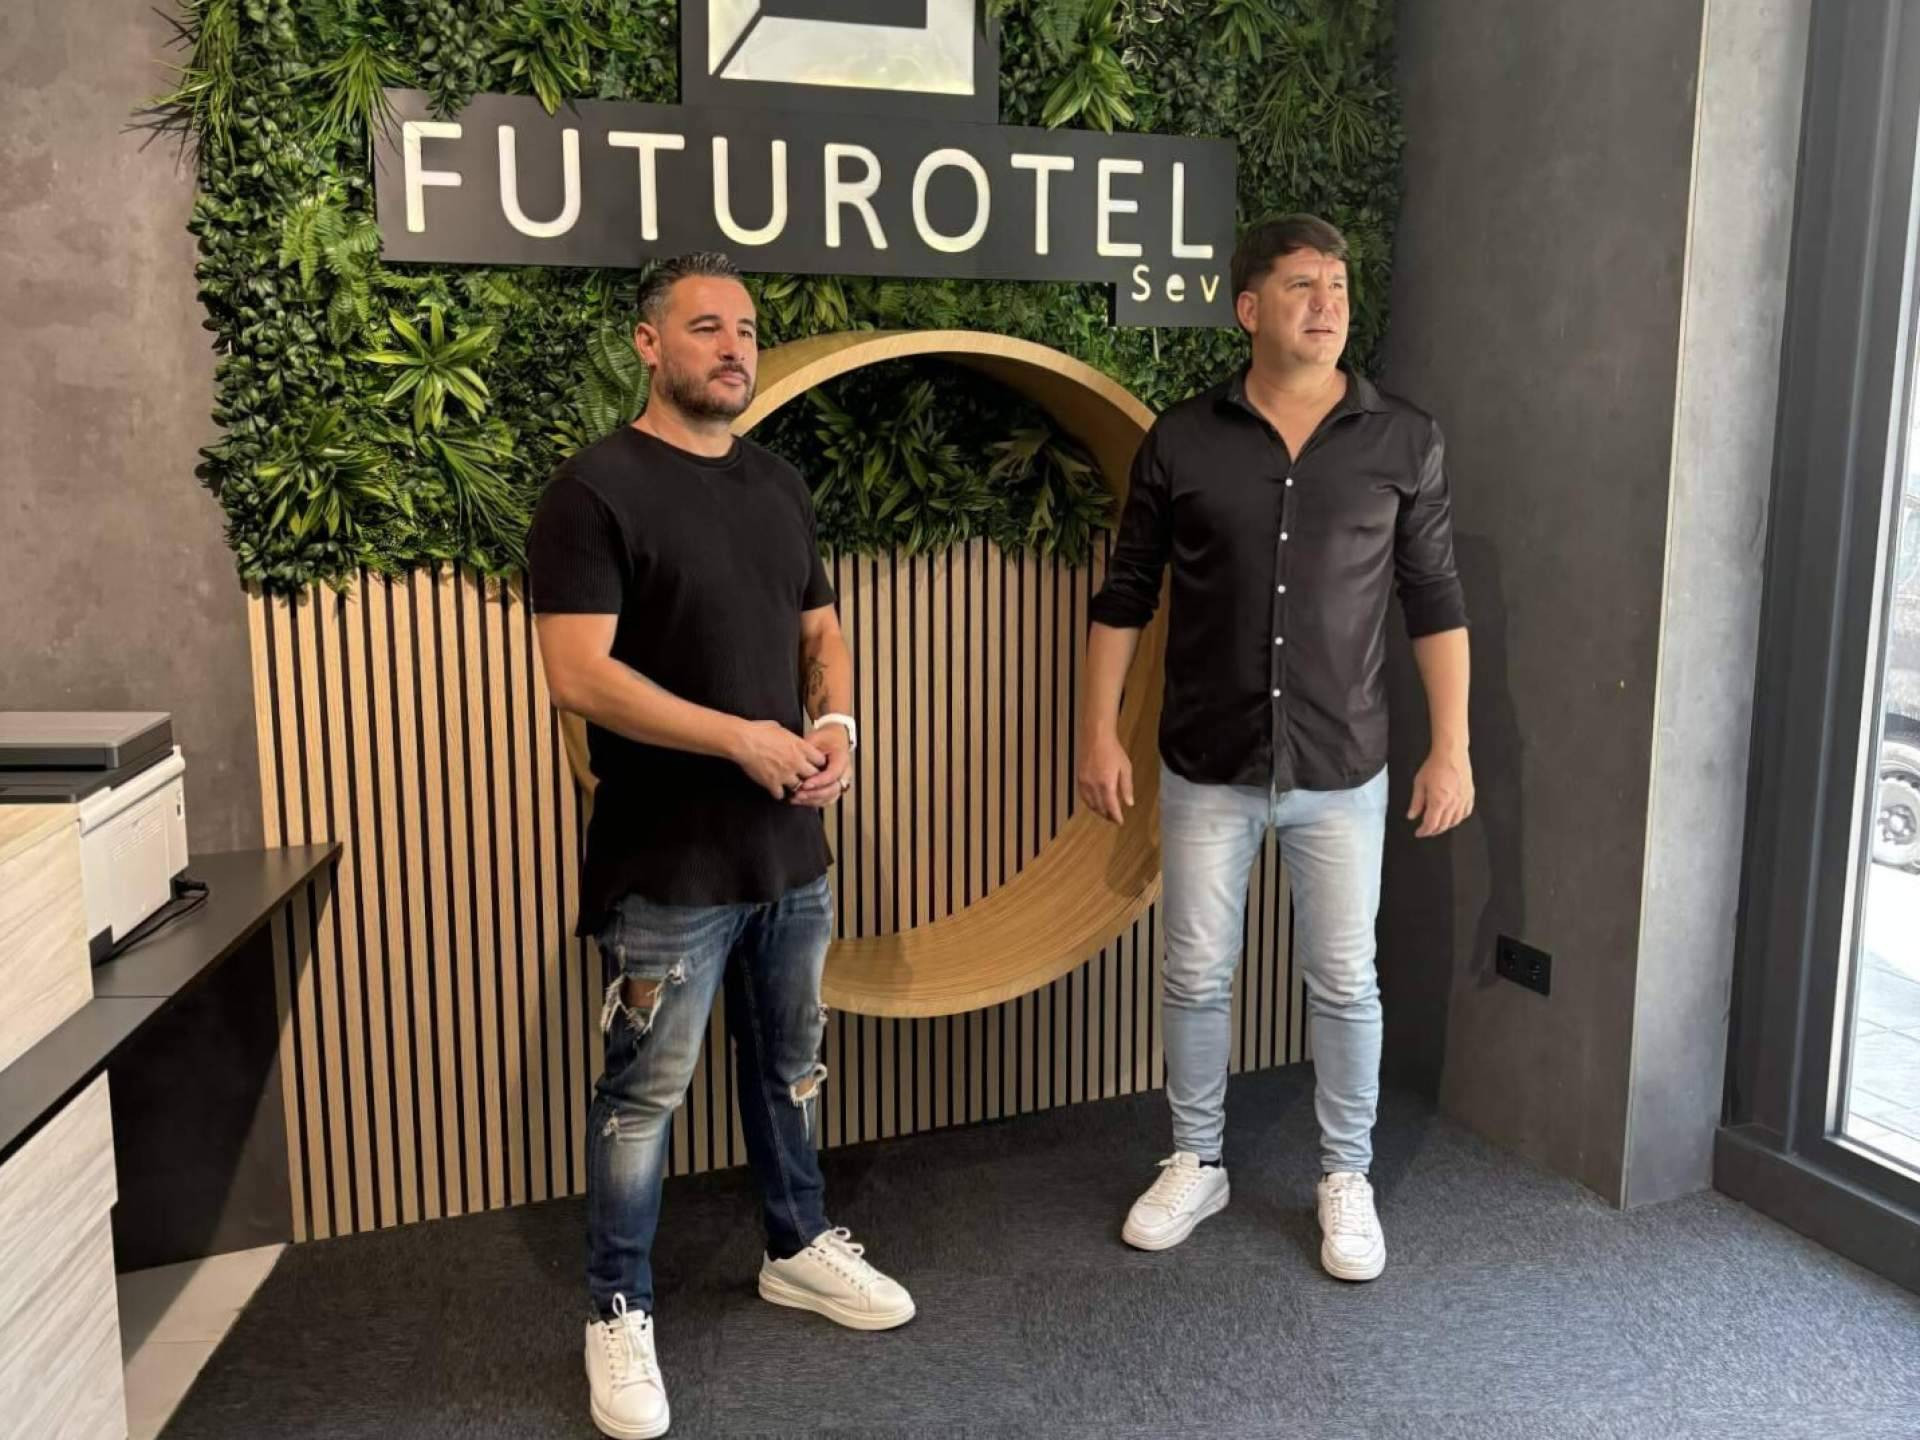  Futurotel llega a Sevilla con un concepto de alojamiento innovador y tecnológico en pleno centro de la ciudad. 